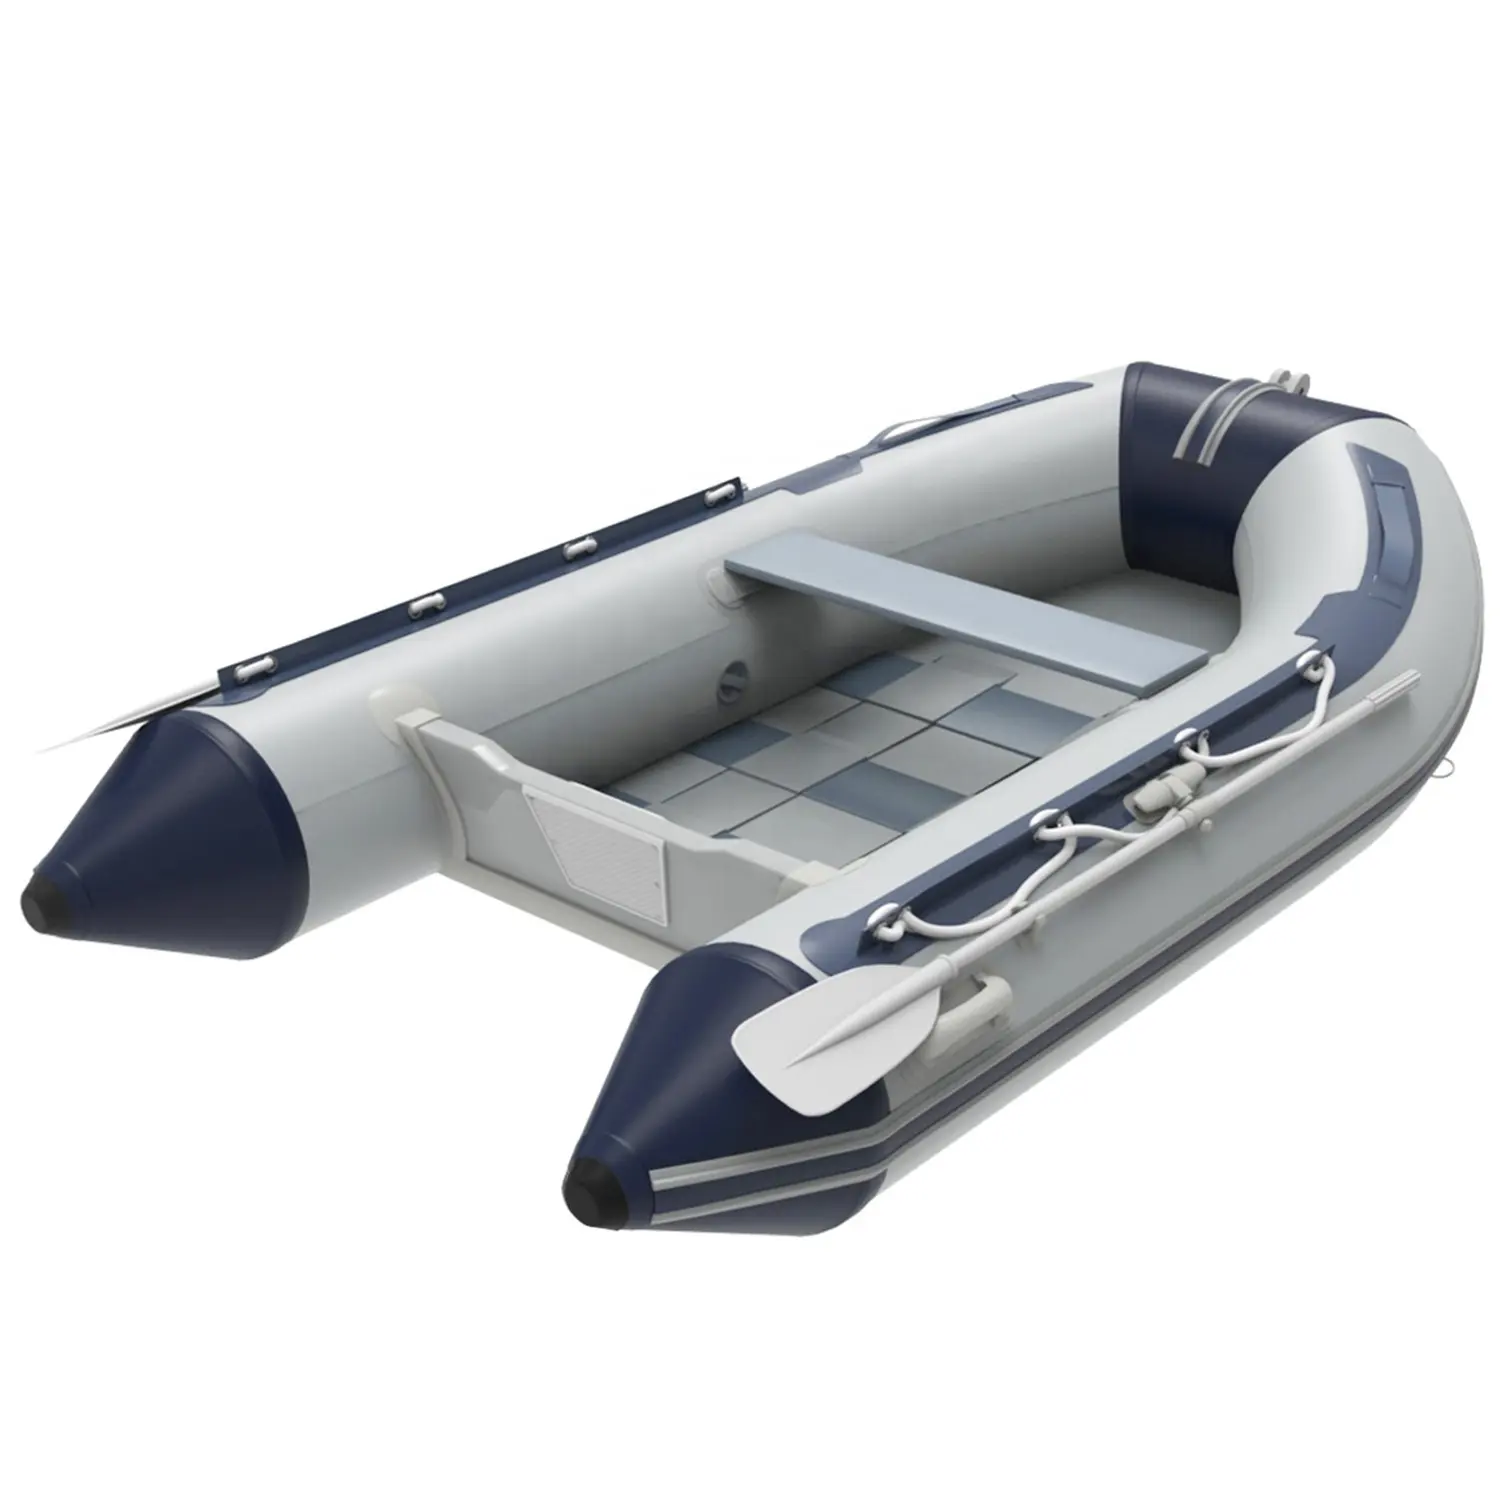 رخيصة الثمن قارب من مادة كلوريد متعدد الفاينيل الصيد قارب قابل للنفخ نفخ مركب مطاطية